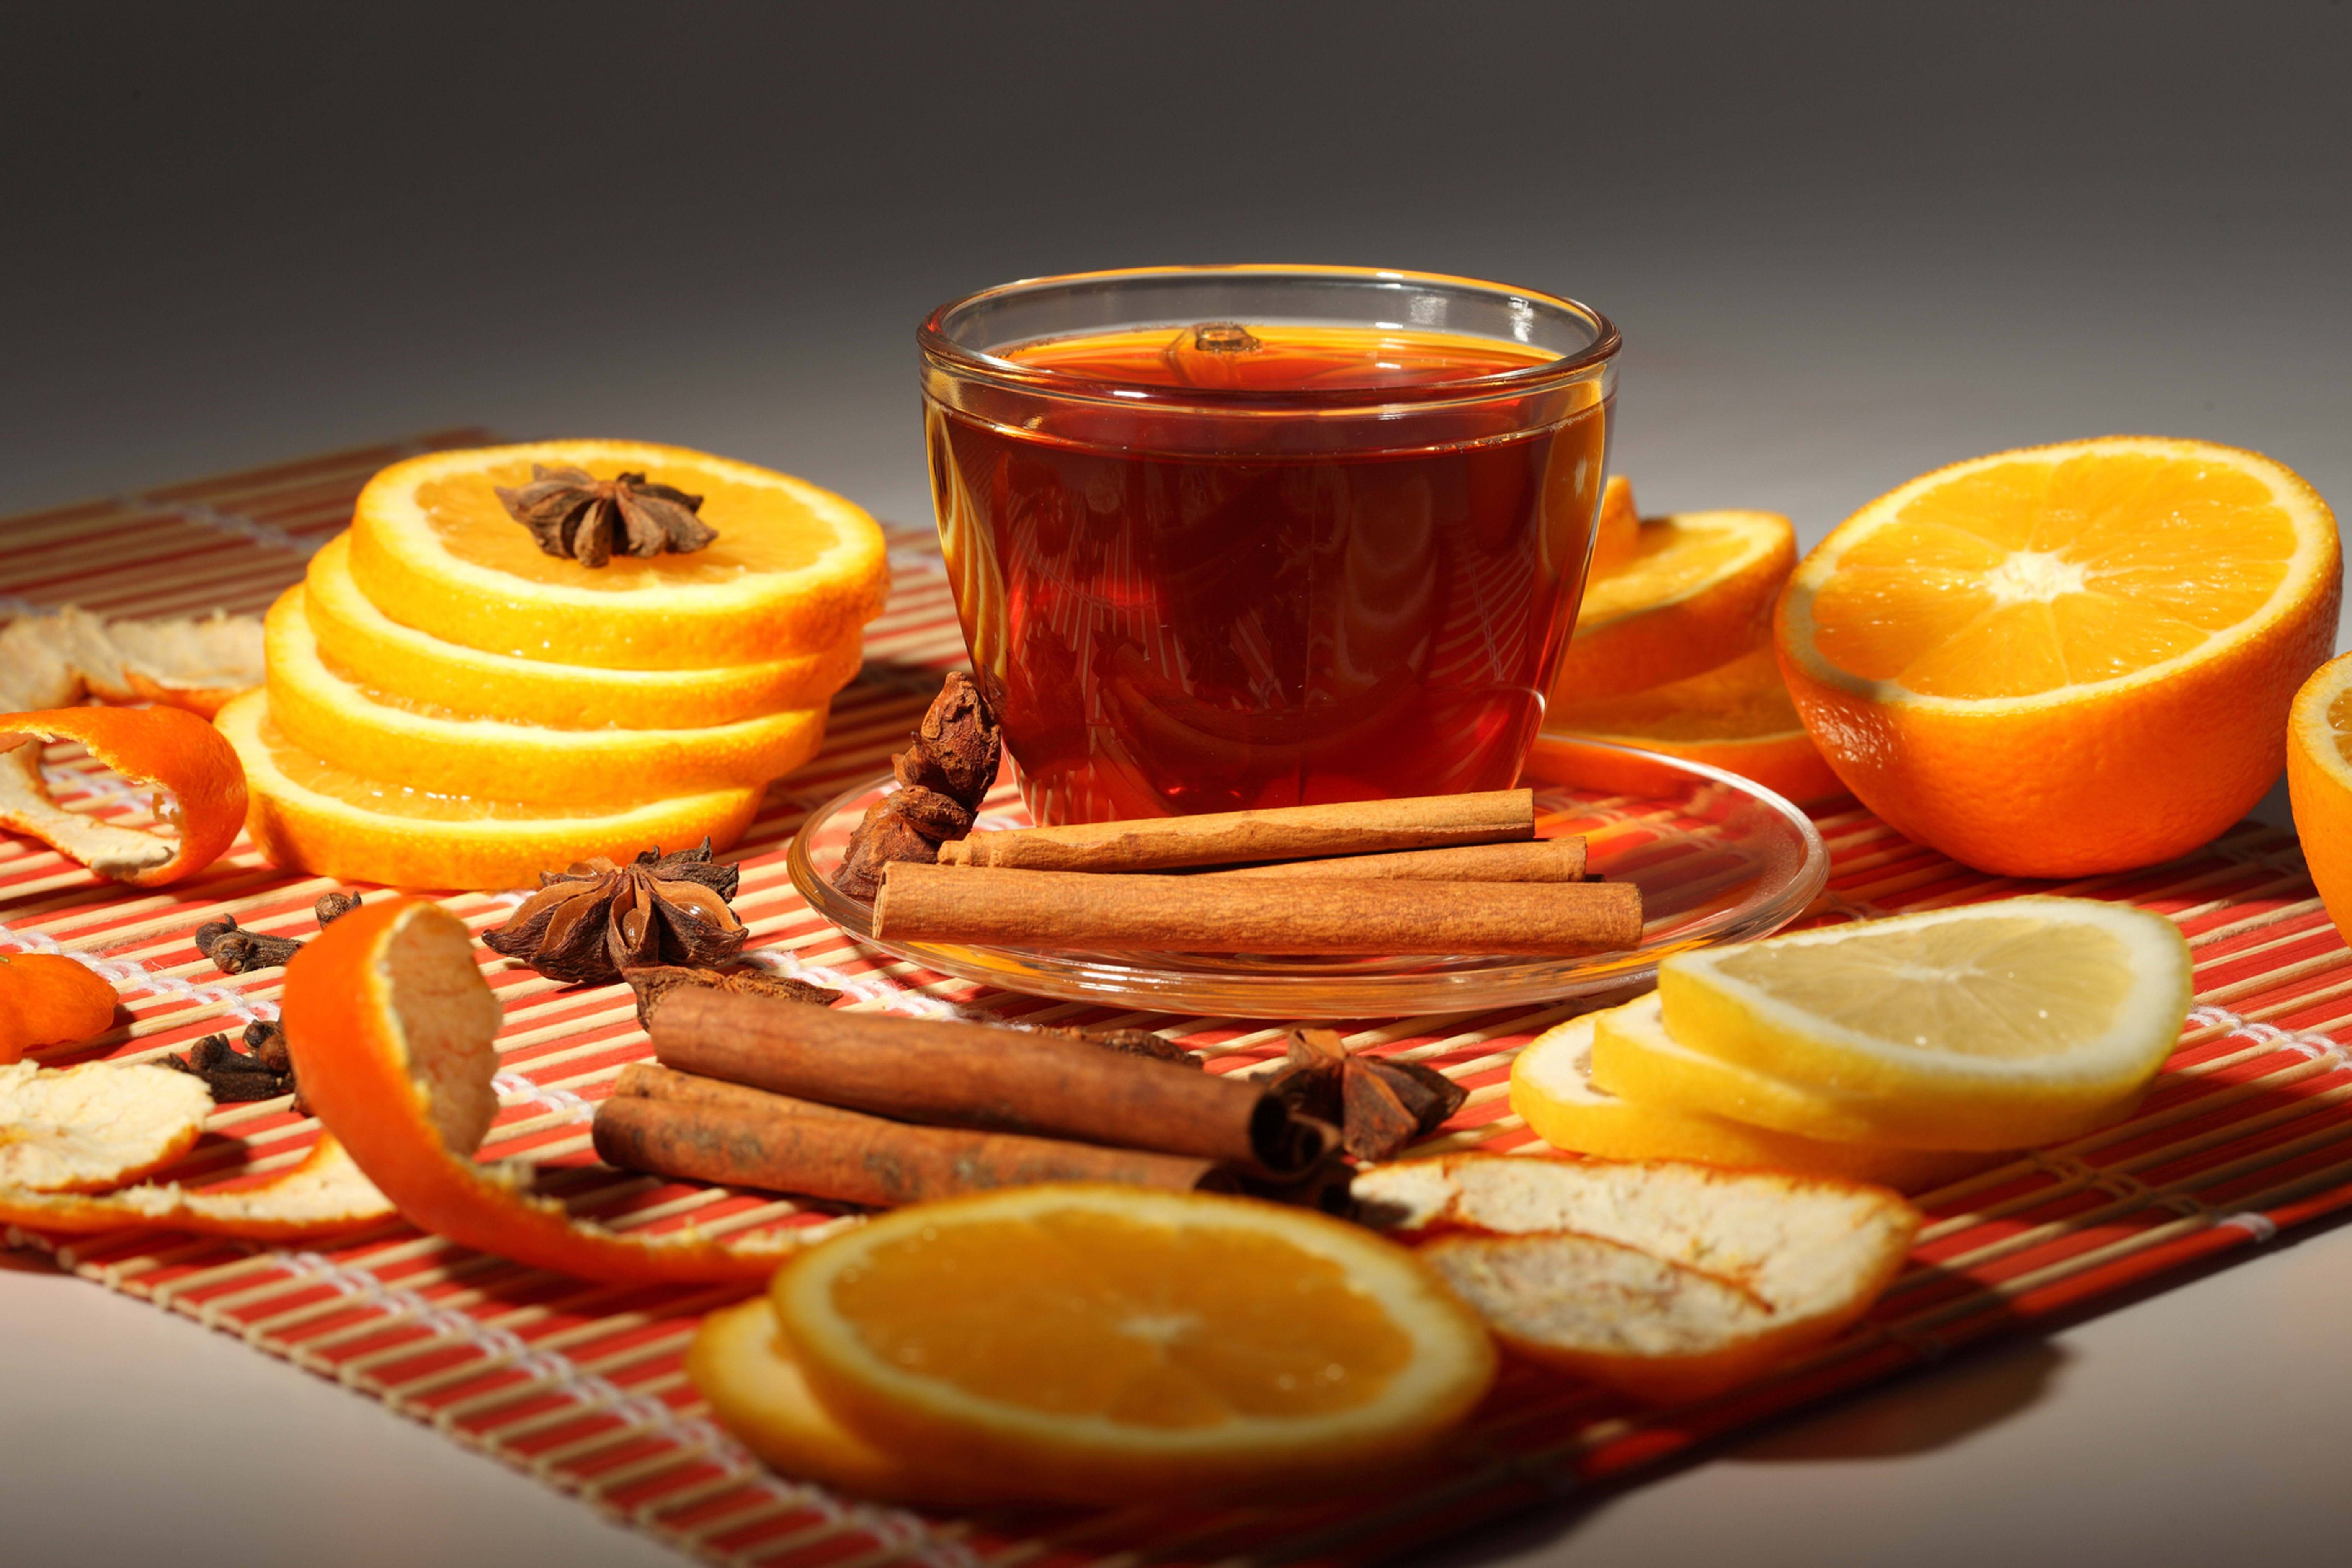 Облепиховый чай, как в любимом кафе: 7 лучших рецептов в домашних условиях